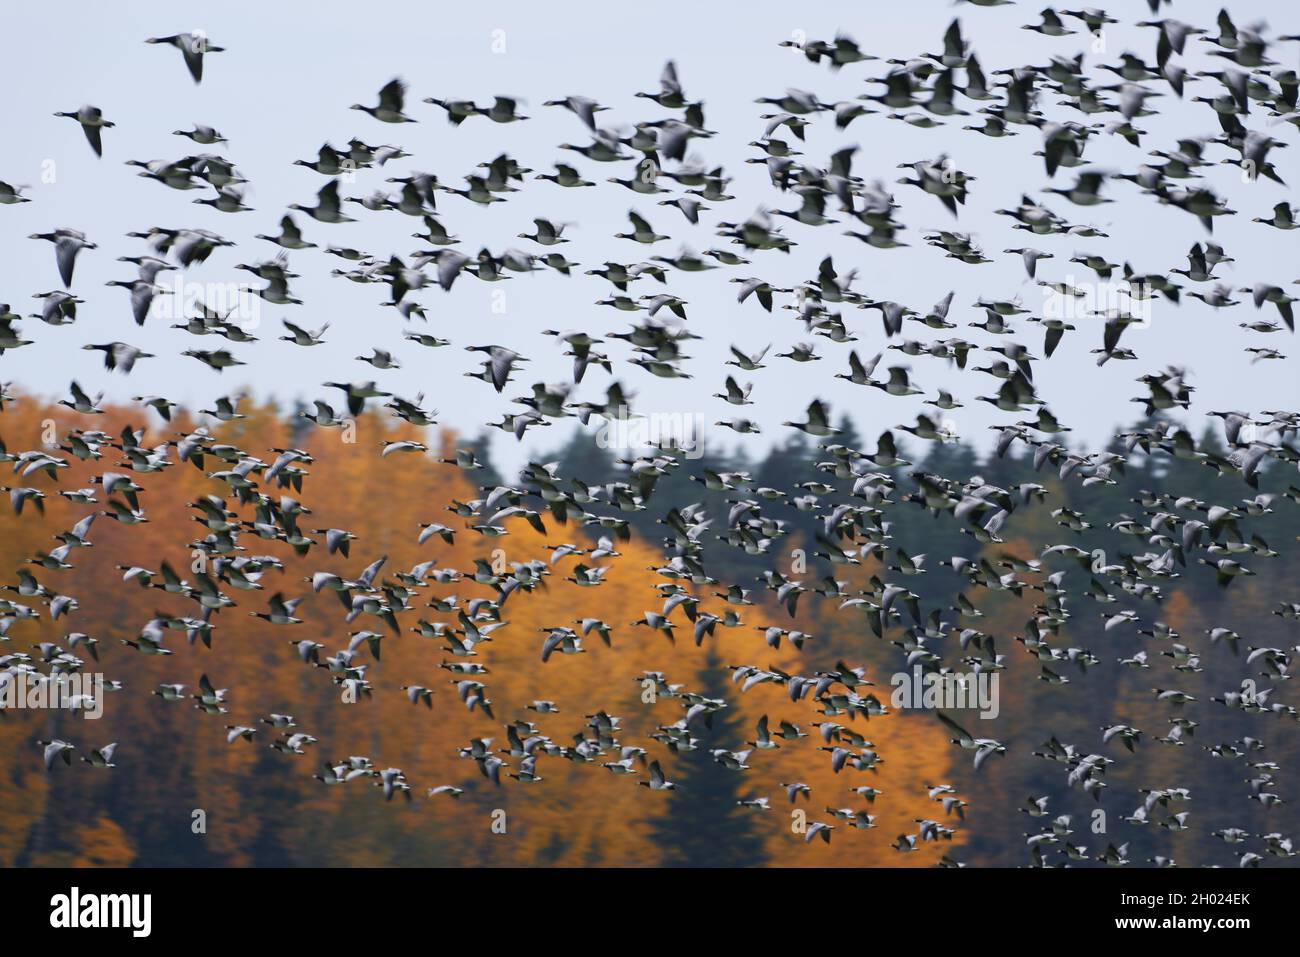 Am Oktobernachmittag in Helsinki, Finnland, fliegt eine dicke Schar von Seegans in schneller Geschwindigkeit durch den Wald mit Herbstlaub. Stockfoto